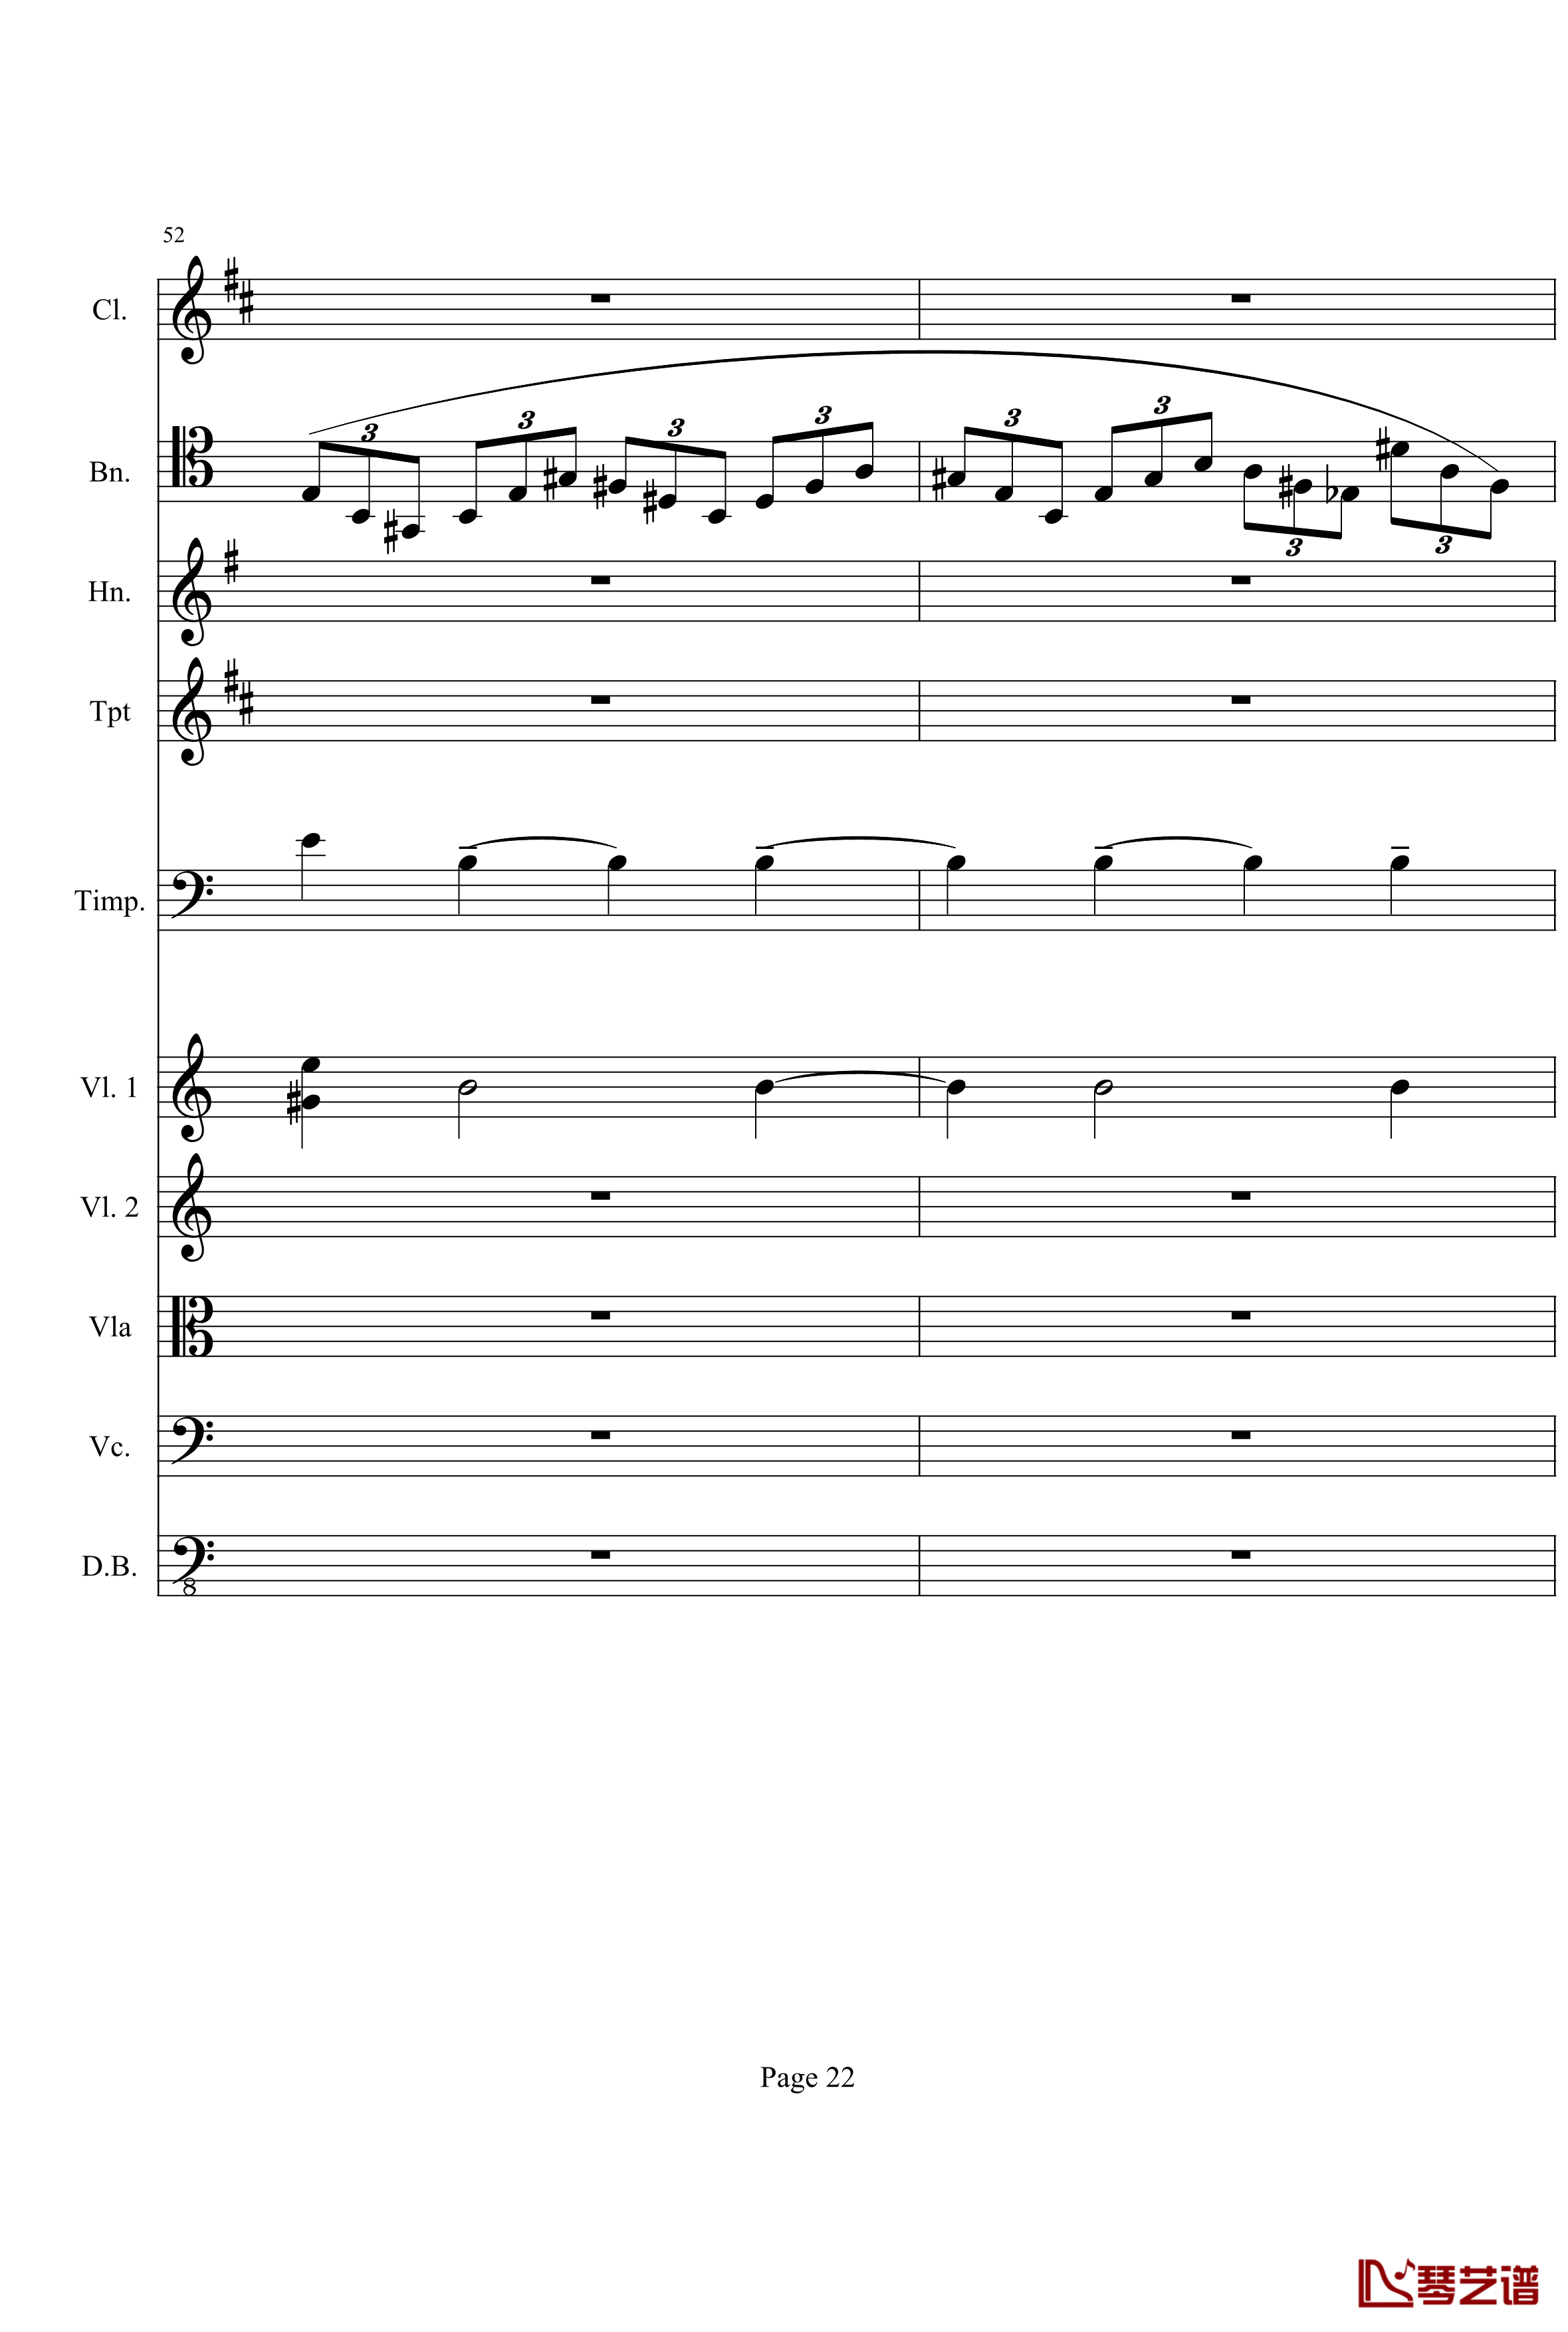 奏鸣曲之交响钢琴谱-第21-Ⅰ-贝多芬-beethoven22